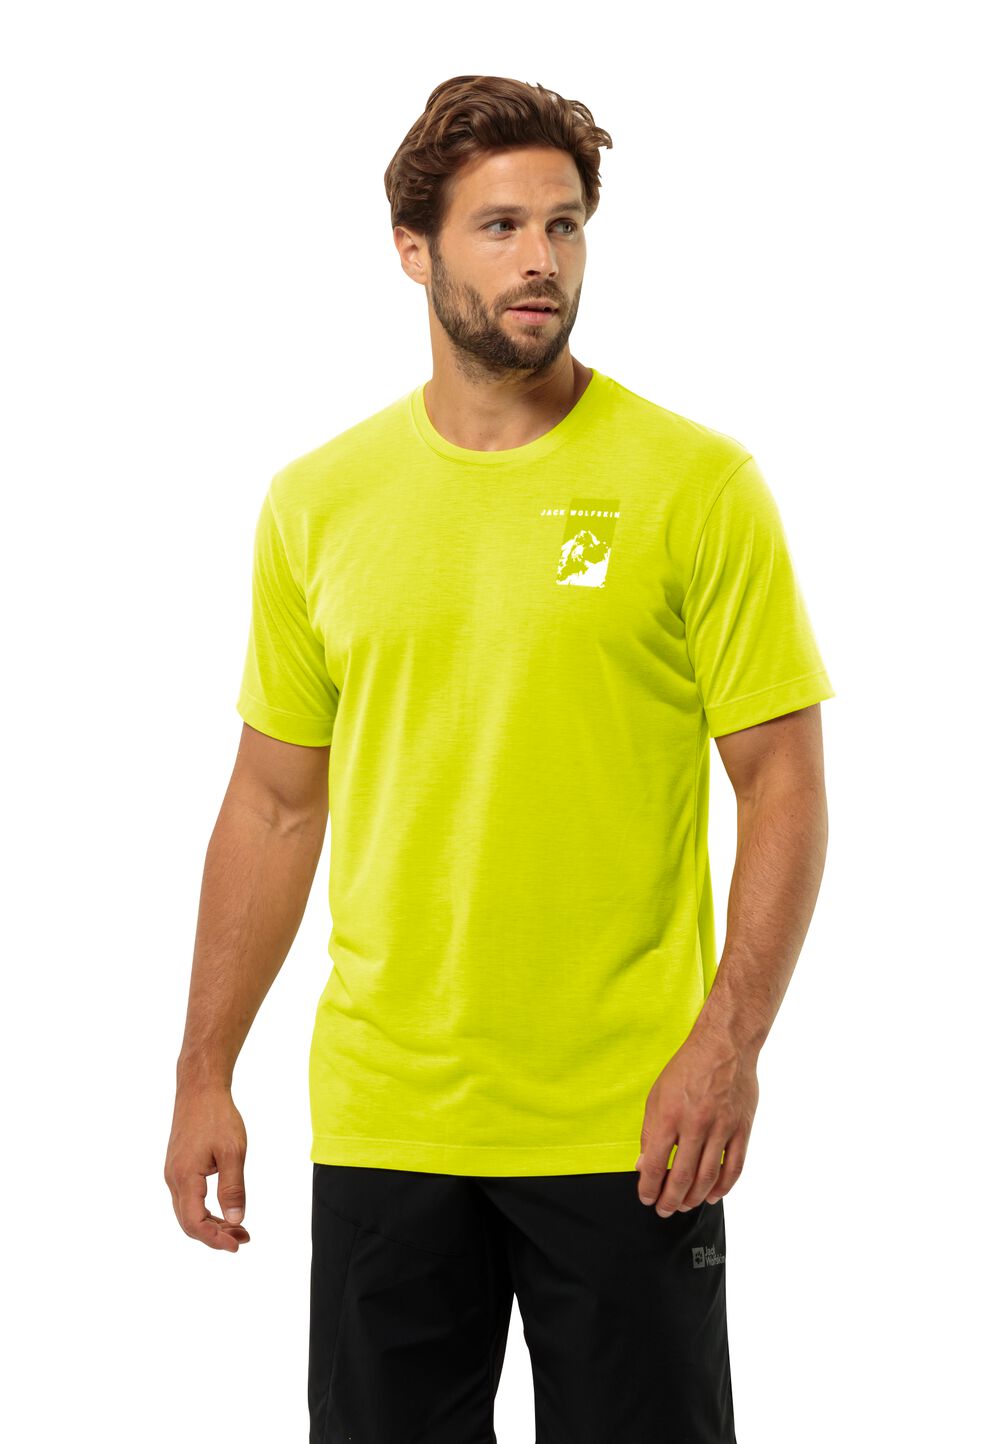 Jack Wolfskin Vonnan S S Graphic T-Shirt Men Functioneel shirt Heren 3XL oranje firefly